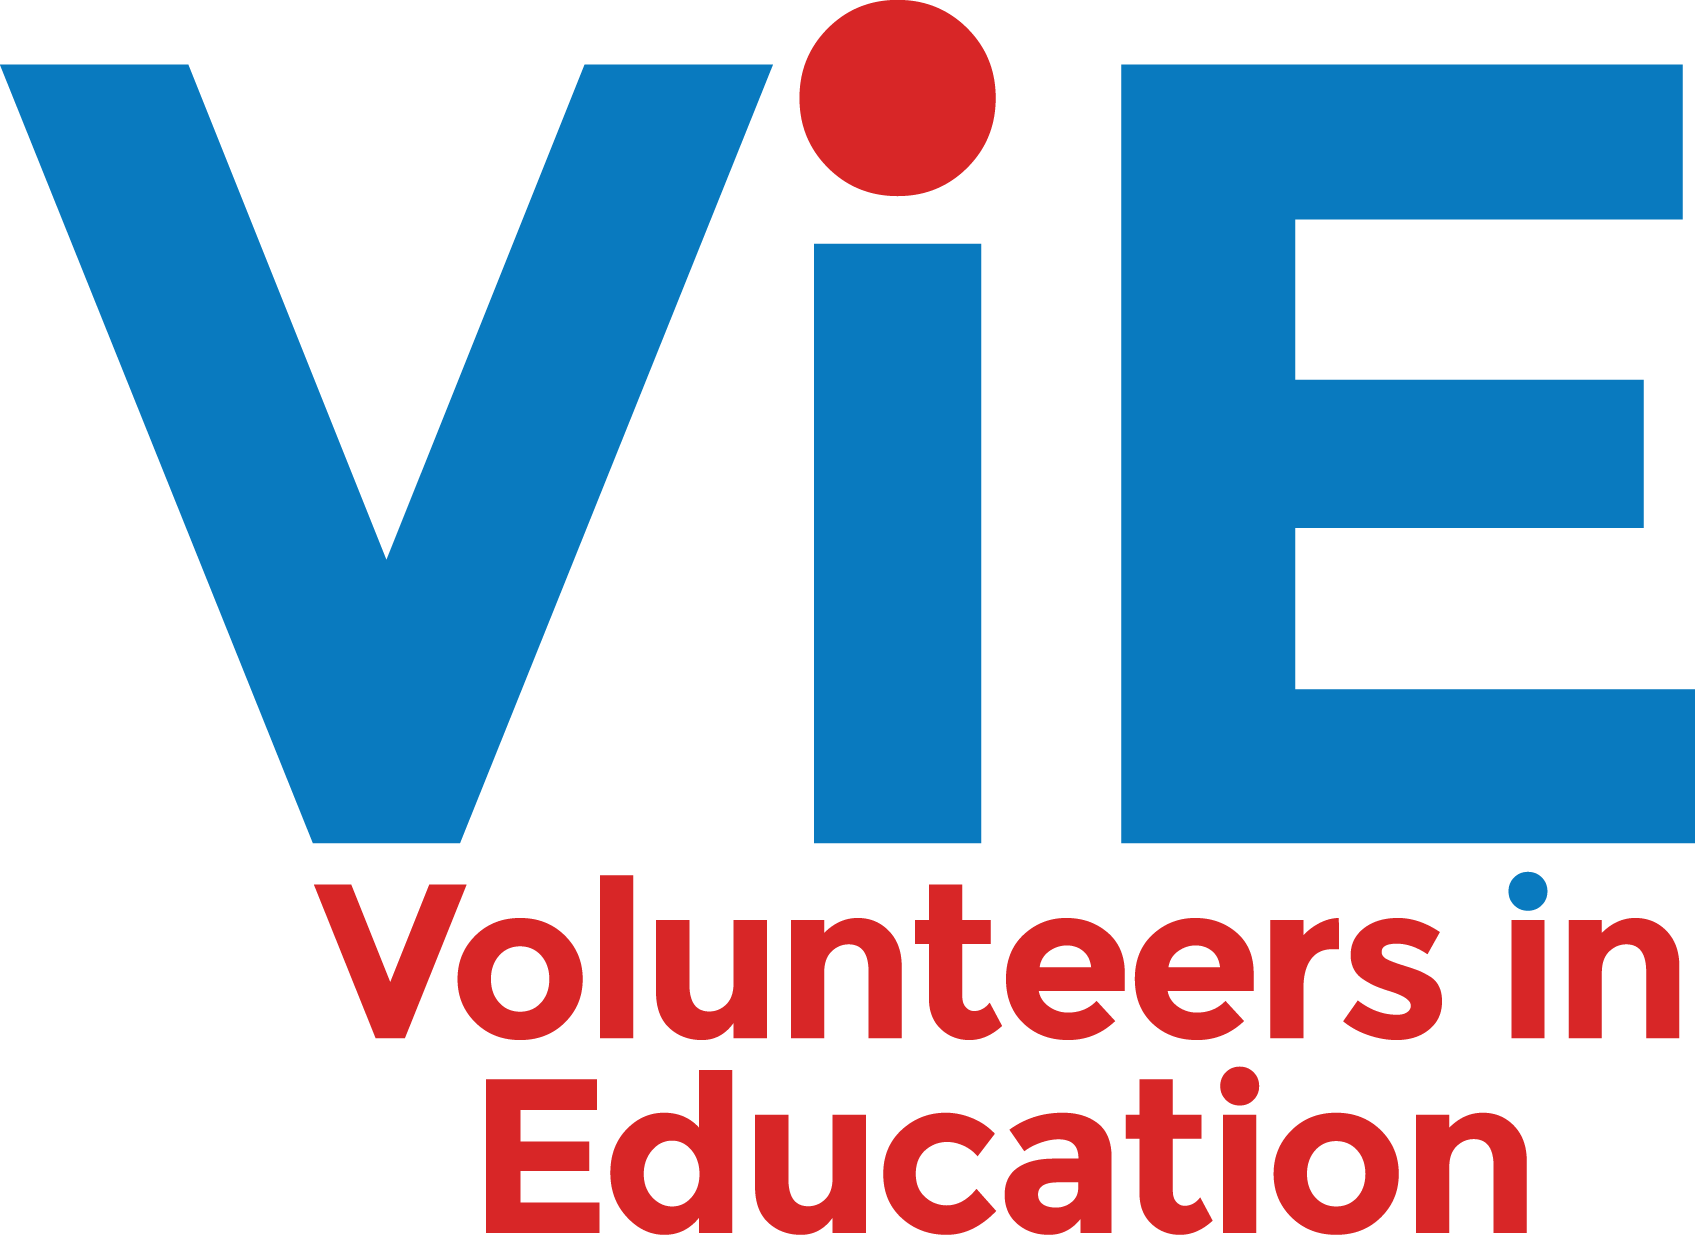 Vie - Volunteers In Education (1695x1235)